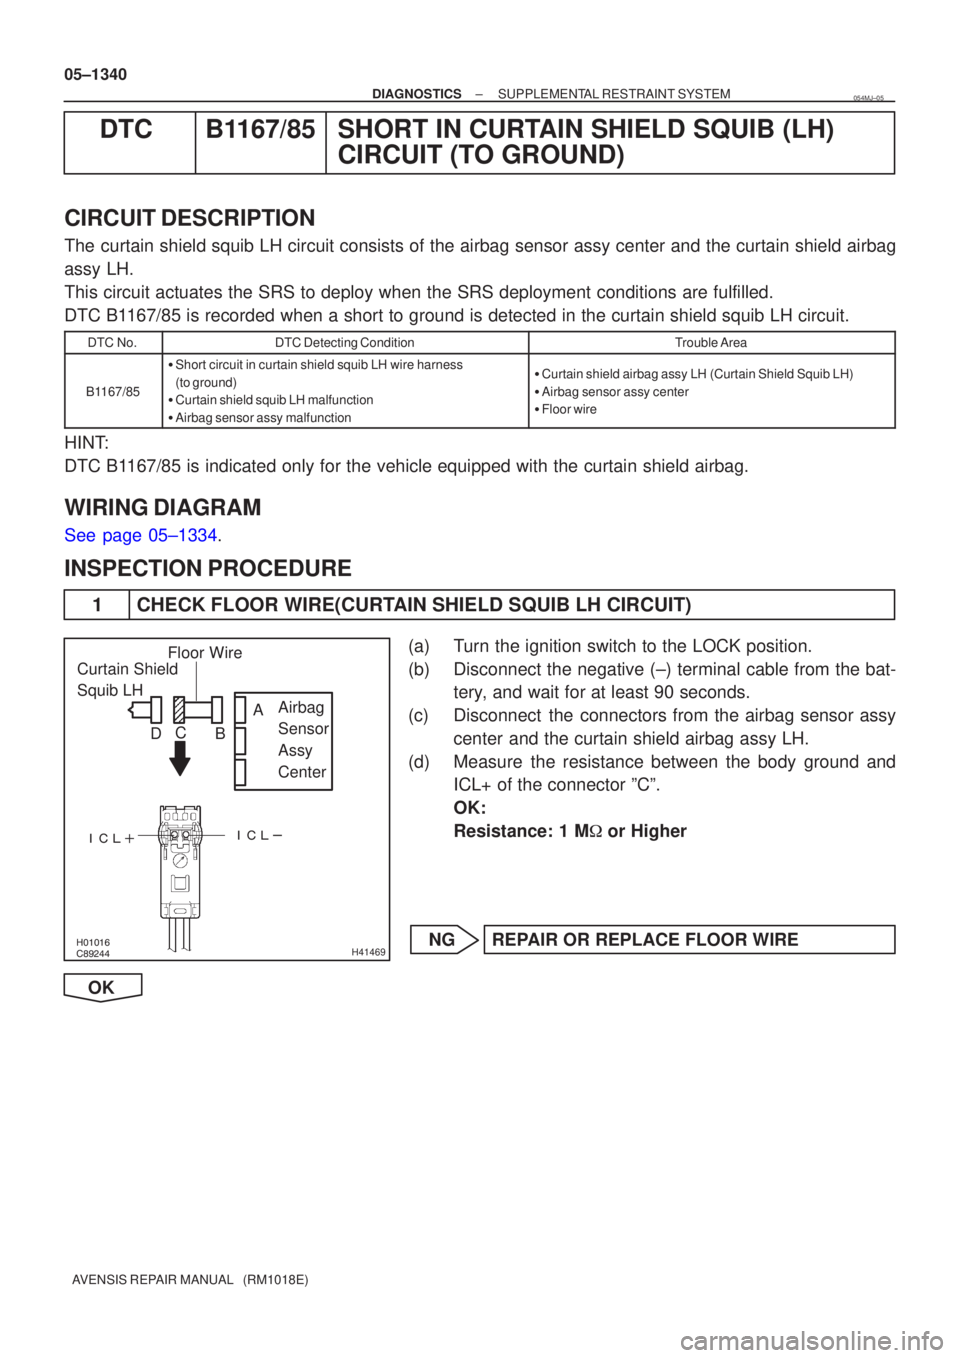 TOYOTA AVENSIS 2005  Service Repair Manual 	
\b


H41469
Curtain Shield 
Squib LH
Airbag 
Sensor 
Assy 
Center
Floor Wire
A
B
C
D
05±1340
±
DIAGNOSTICS SUPPLEMENTAL RESTRAINT SYSTEM
AVENSIS REPAIR MANUAL   (RM1018E)
DTC B11